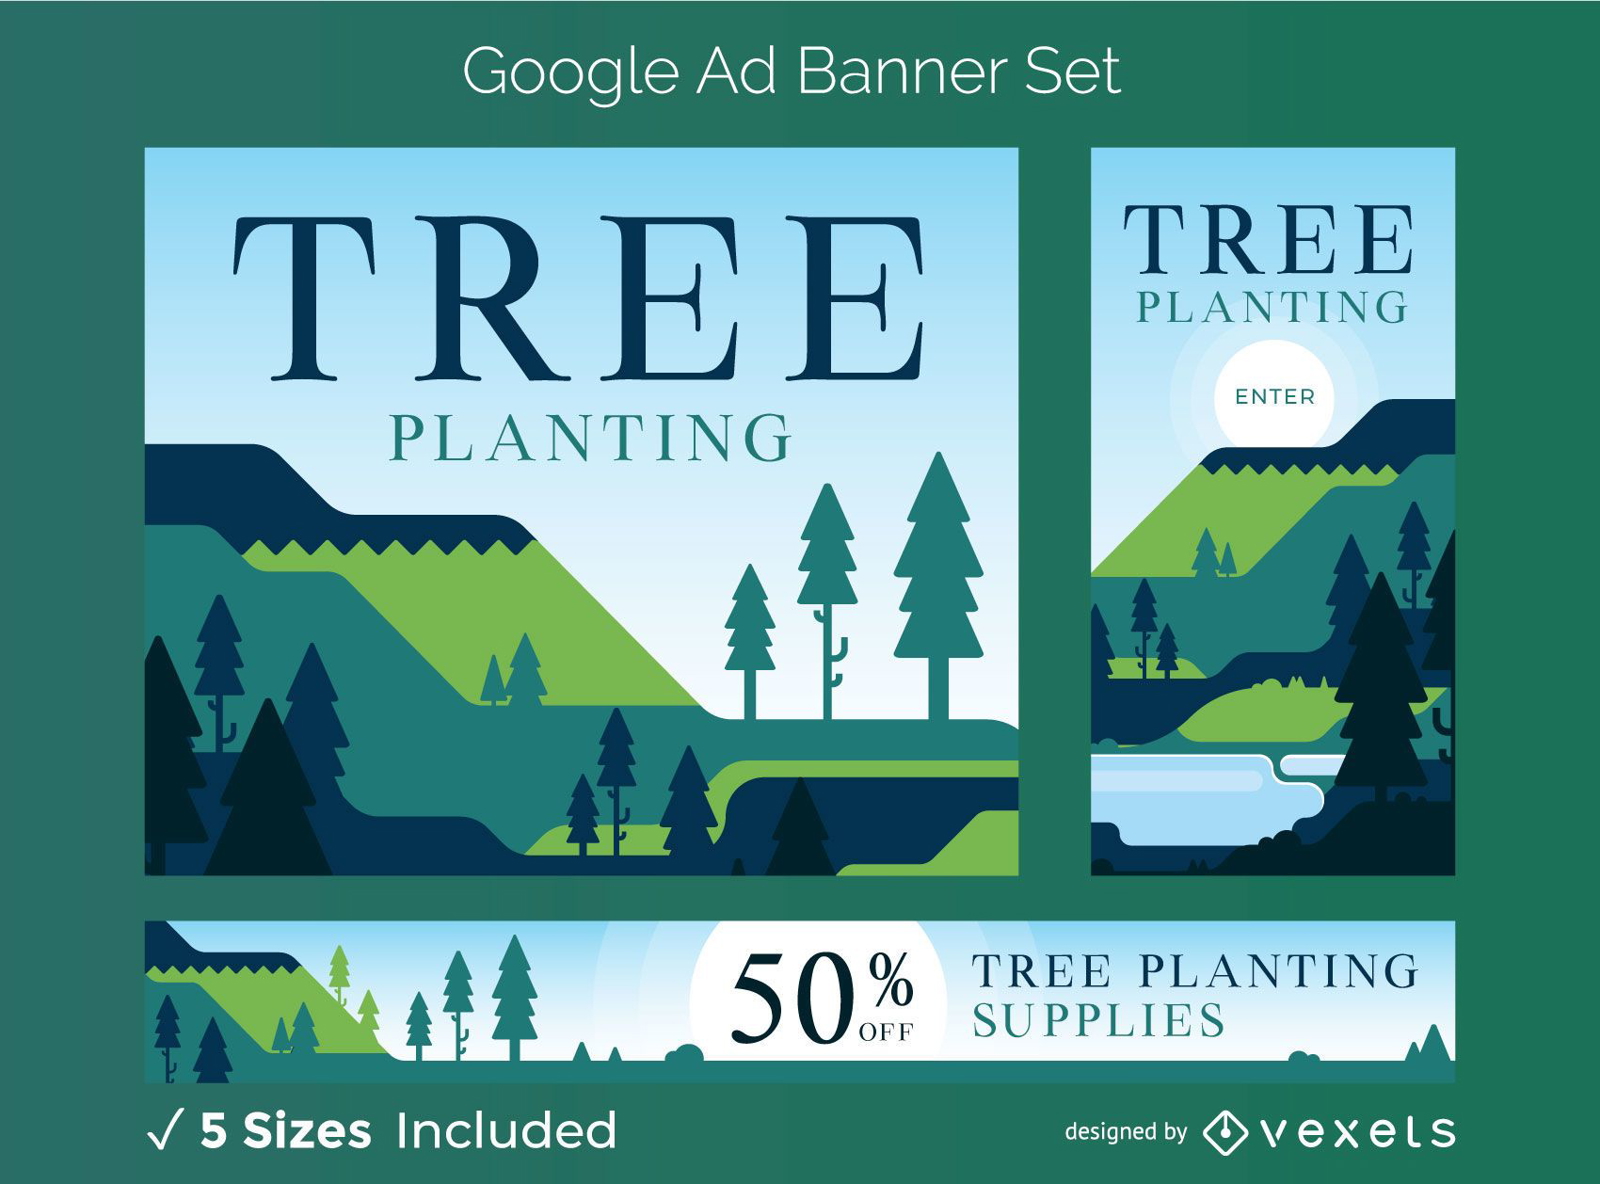 Conjunto de banners de anúncios do Google para plantação de árvores